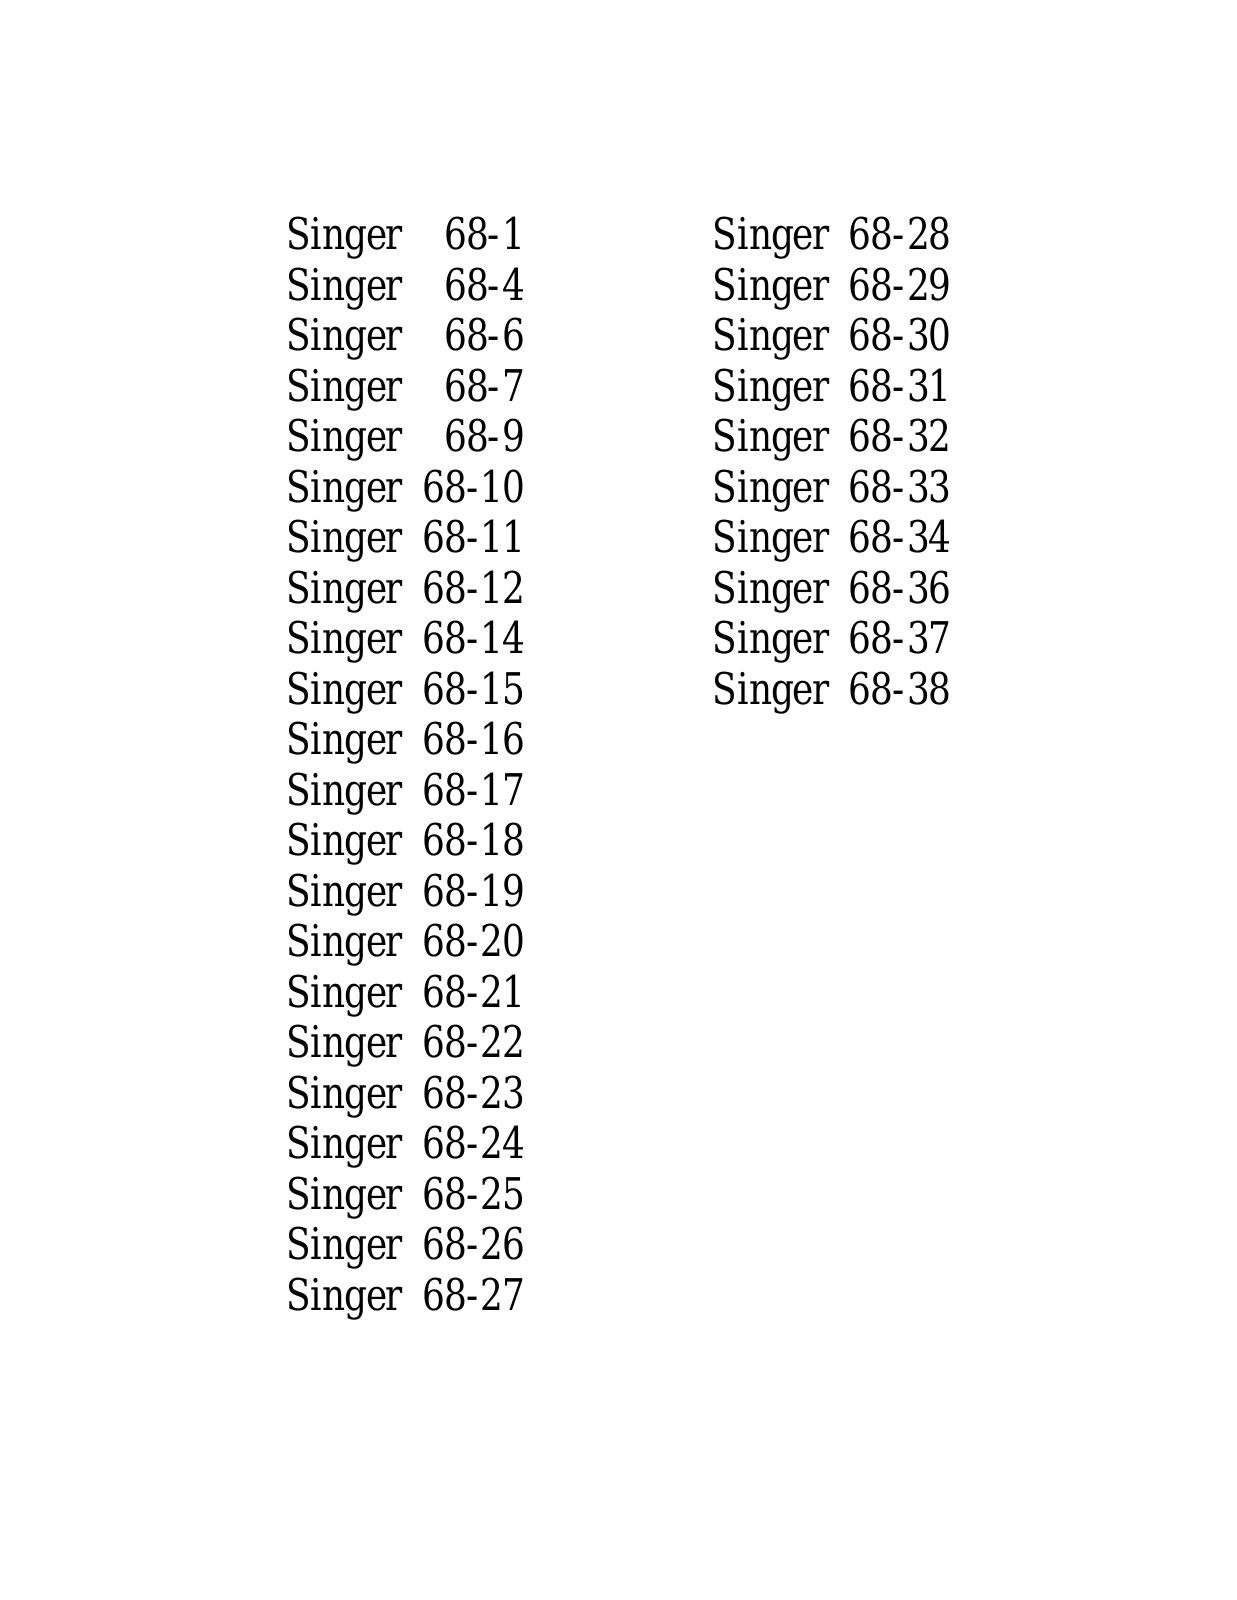 SINGER 68-1, 68-4, 68-6, 68-7, 68-9 Parts List